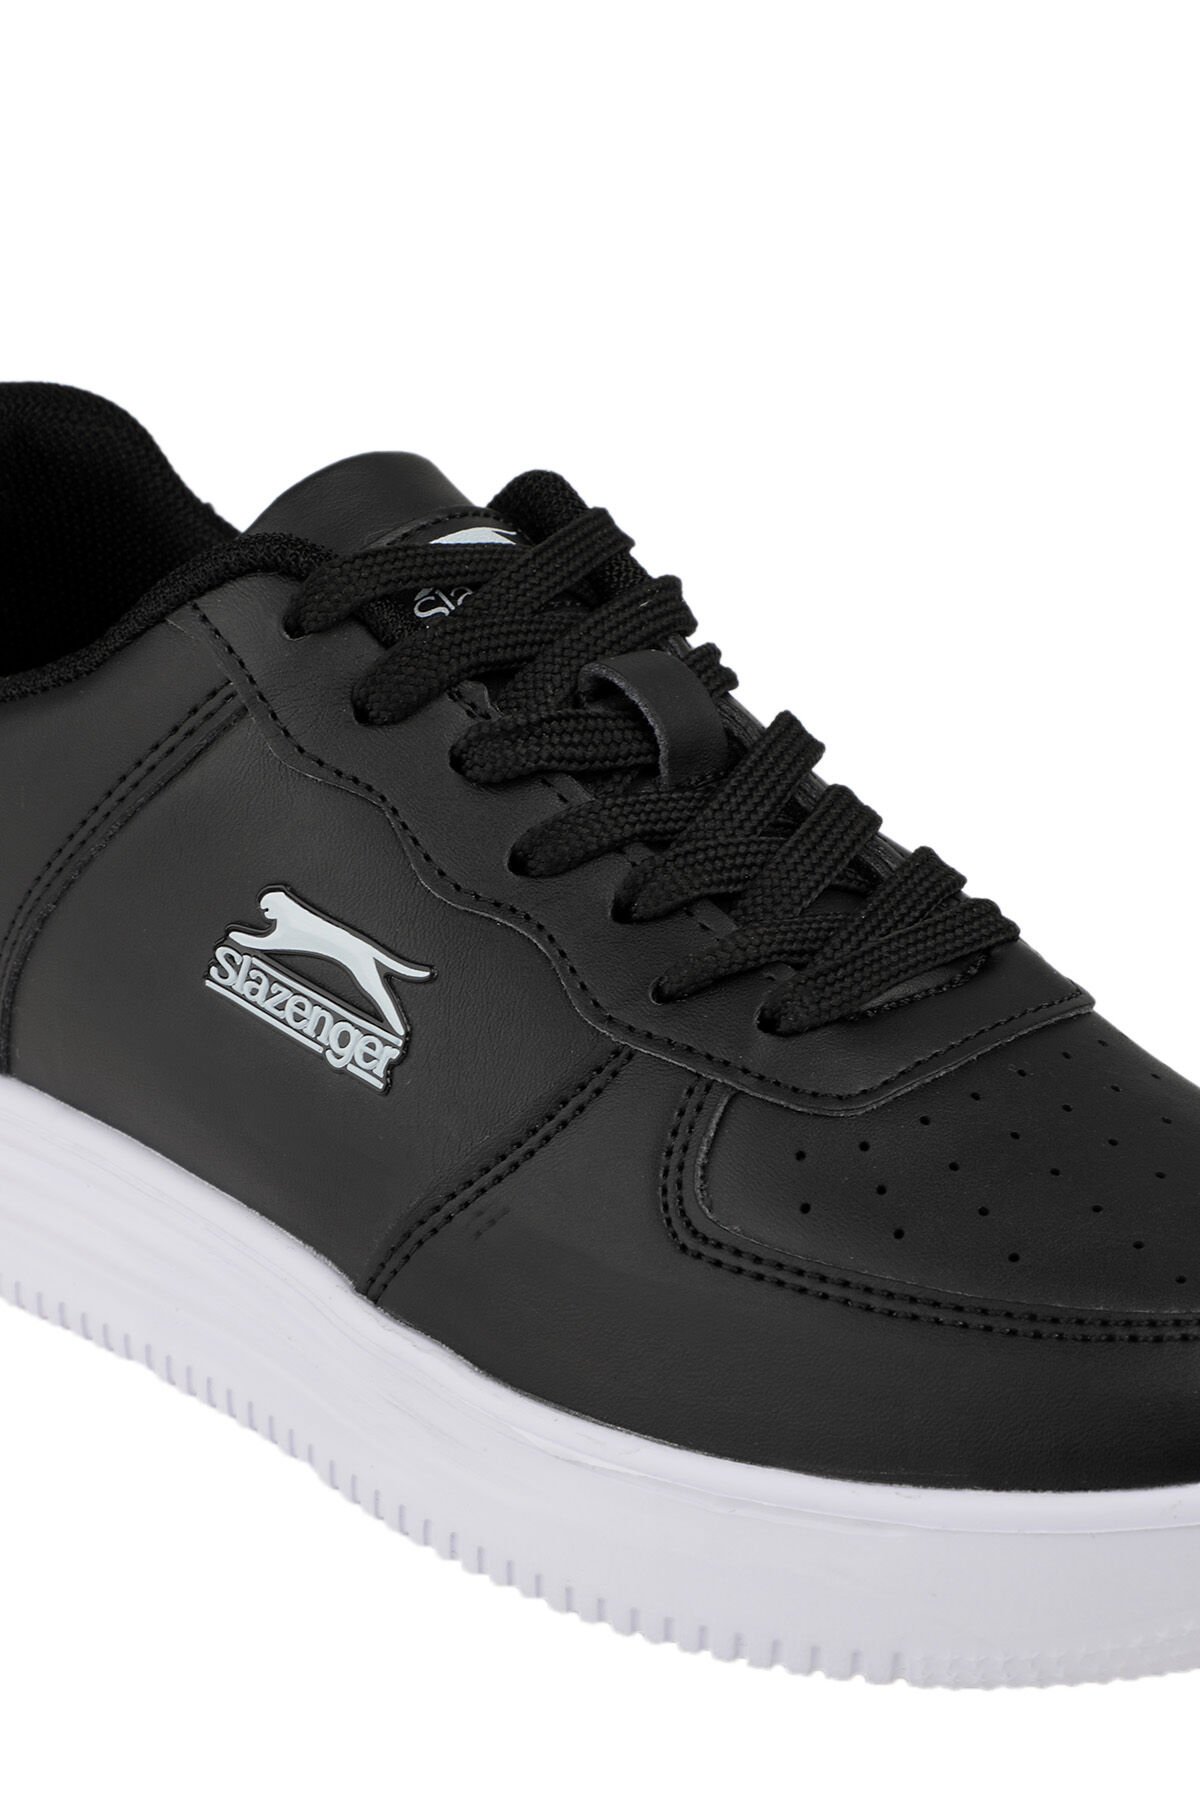 Slazenger CARBON Sneaker Kadın Ayakkabı Siyah / Beyaz - Thumbnail